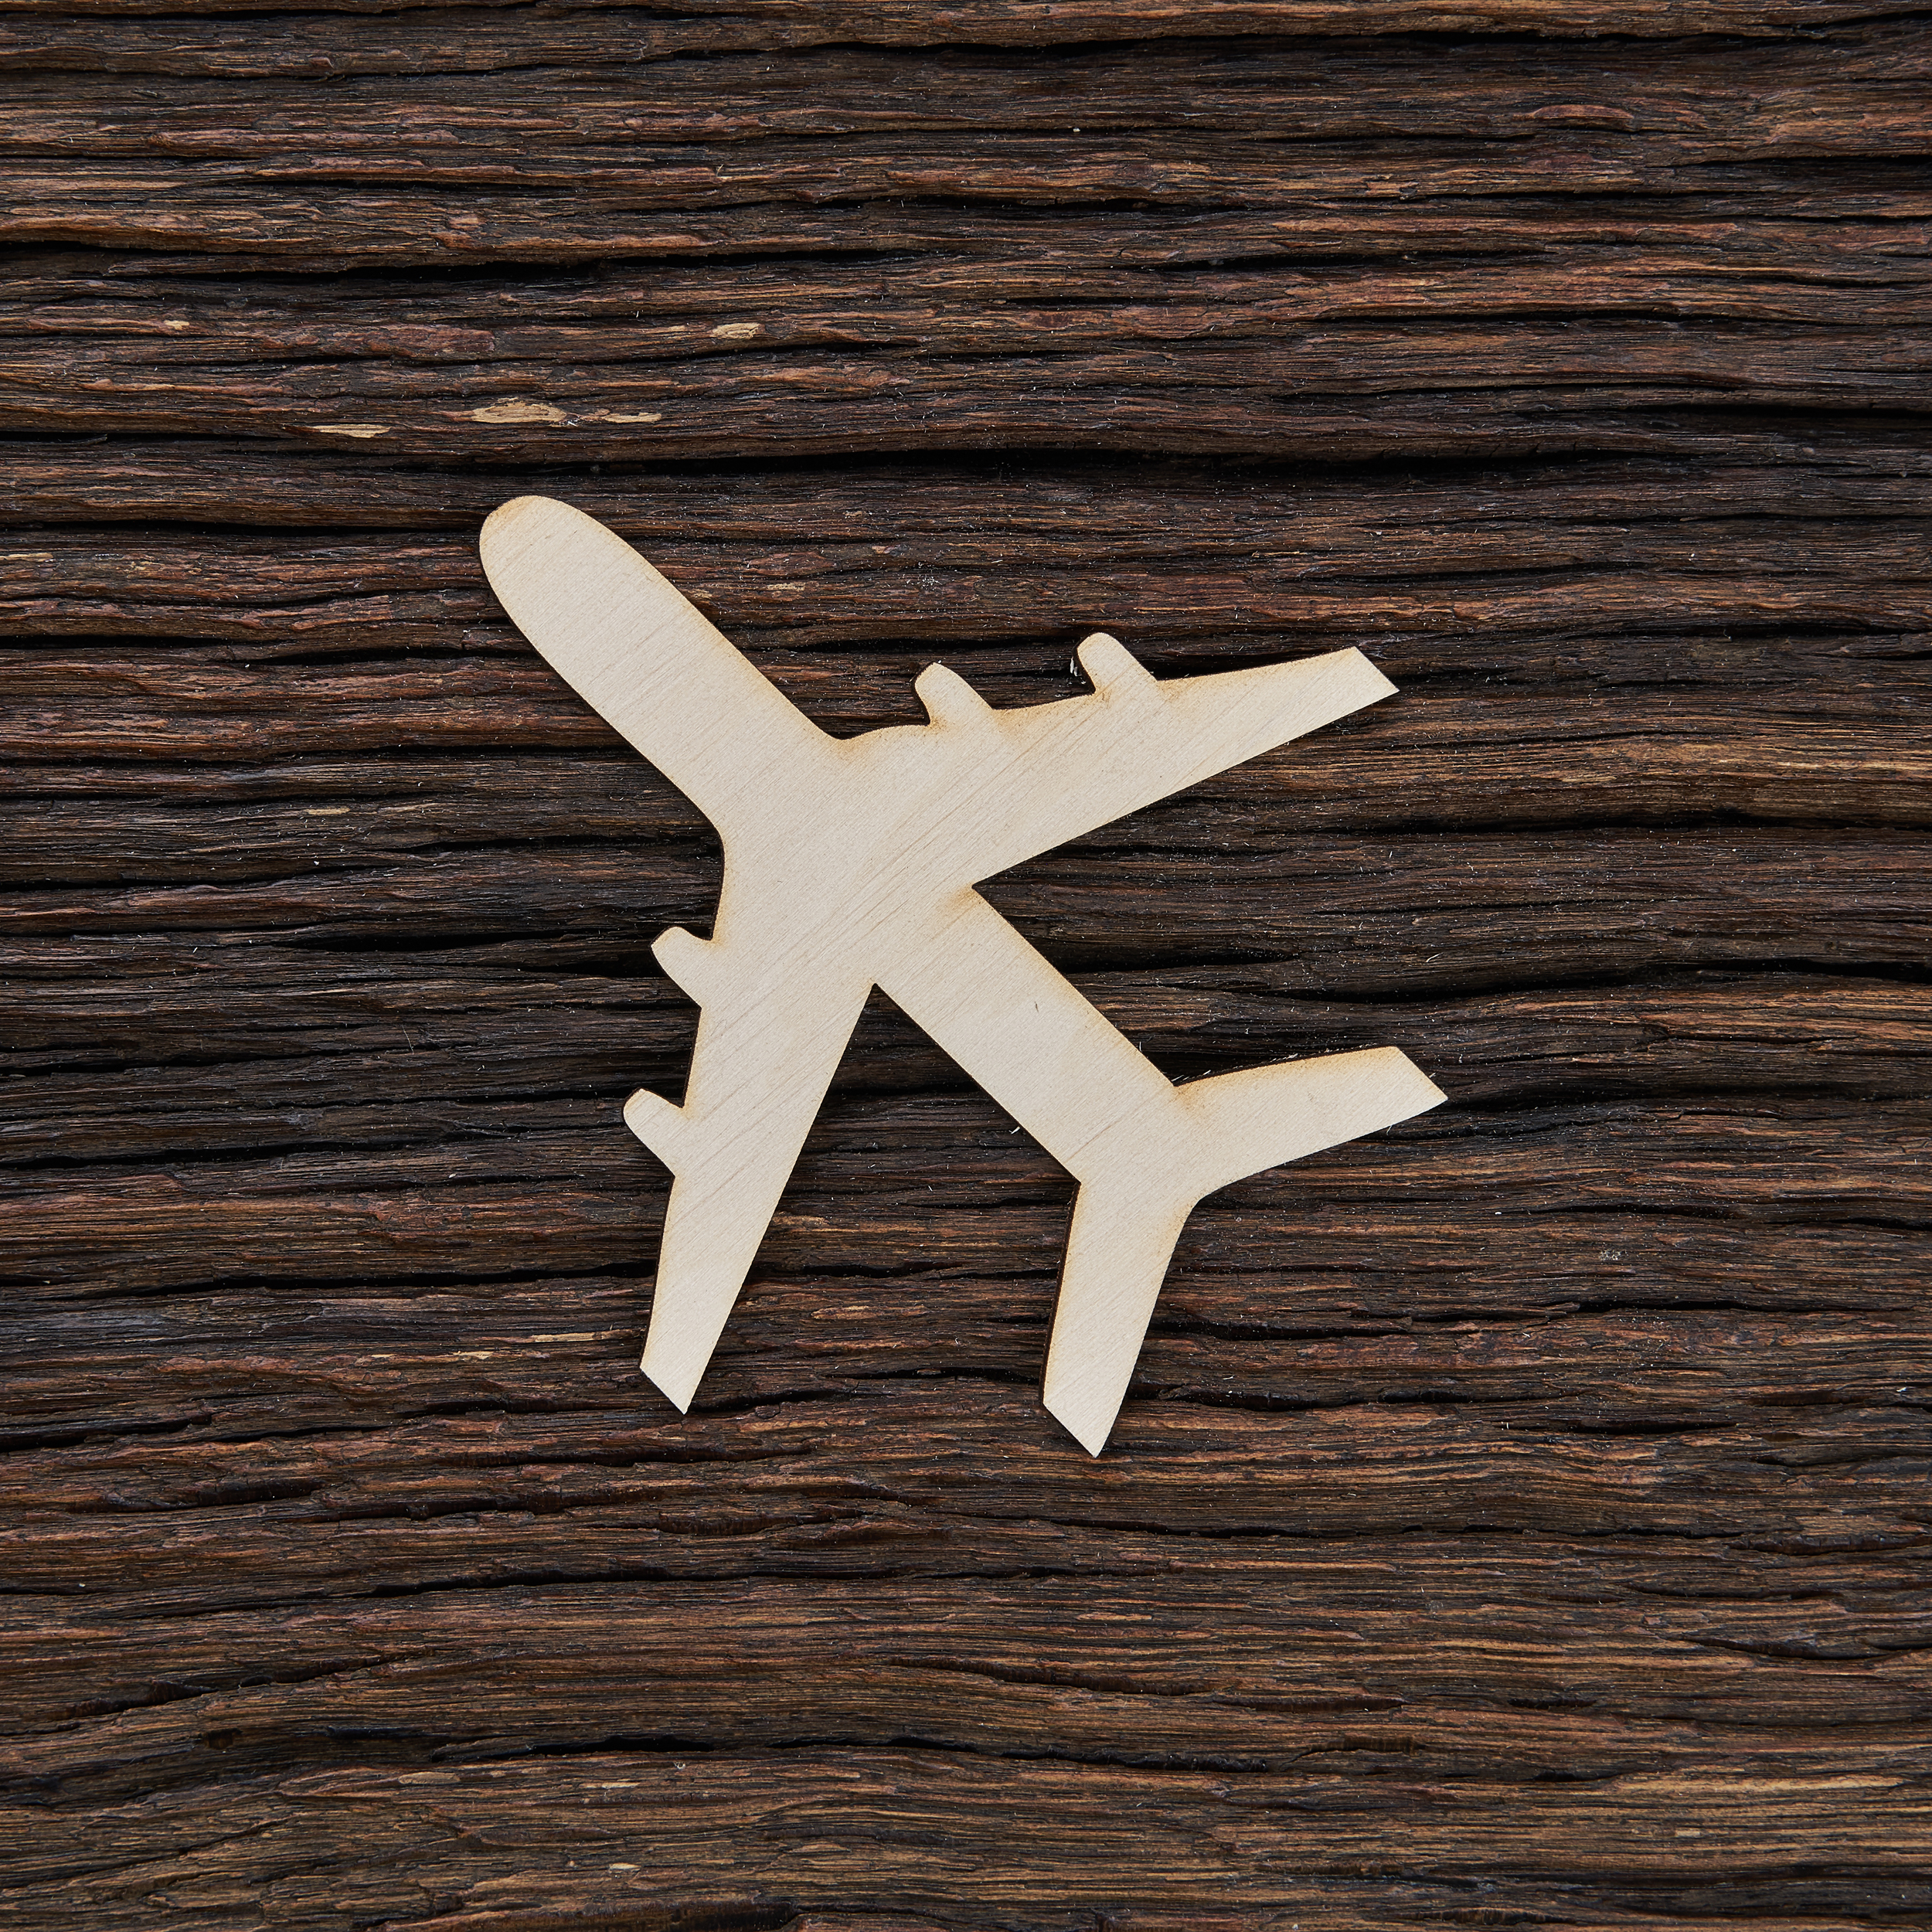 Keleivinis lėktuvas - medinis gaminys, pjautas lazeriu - dekoravimui ir dažymui 